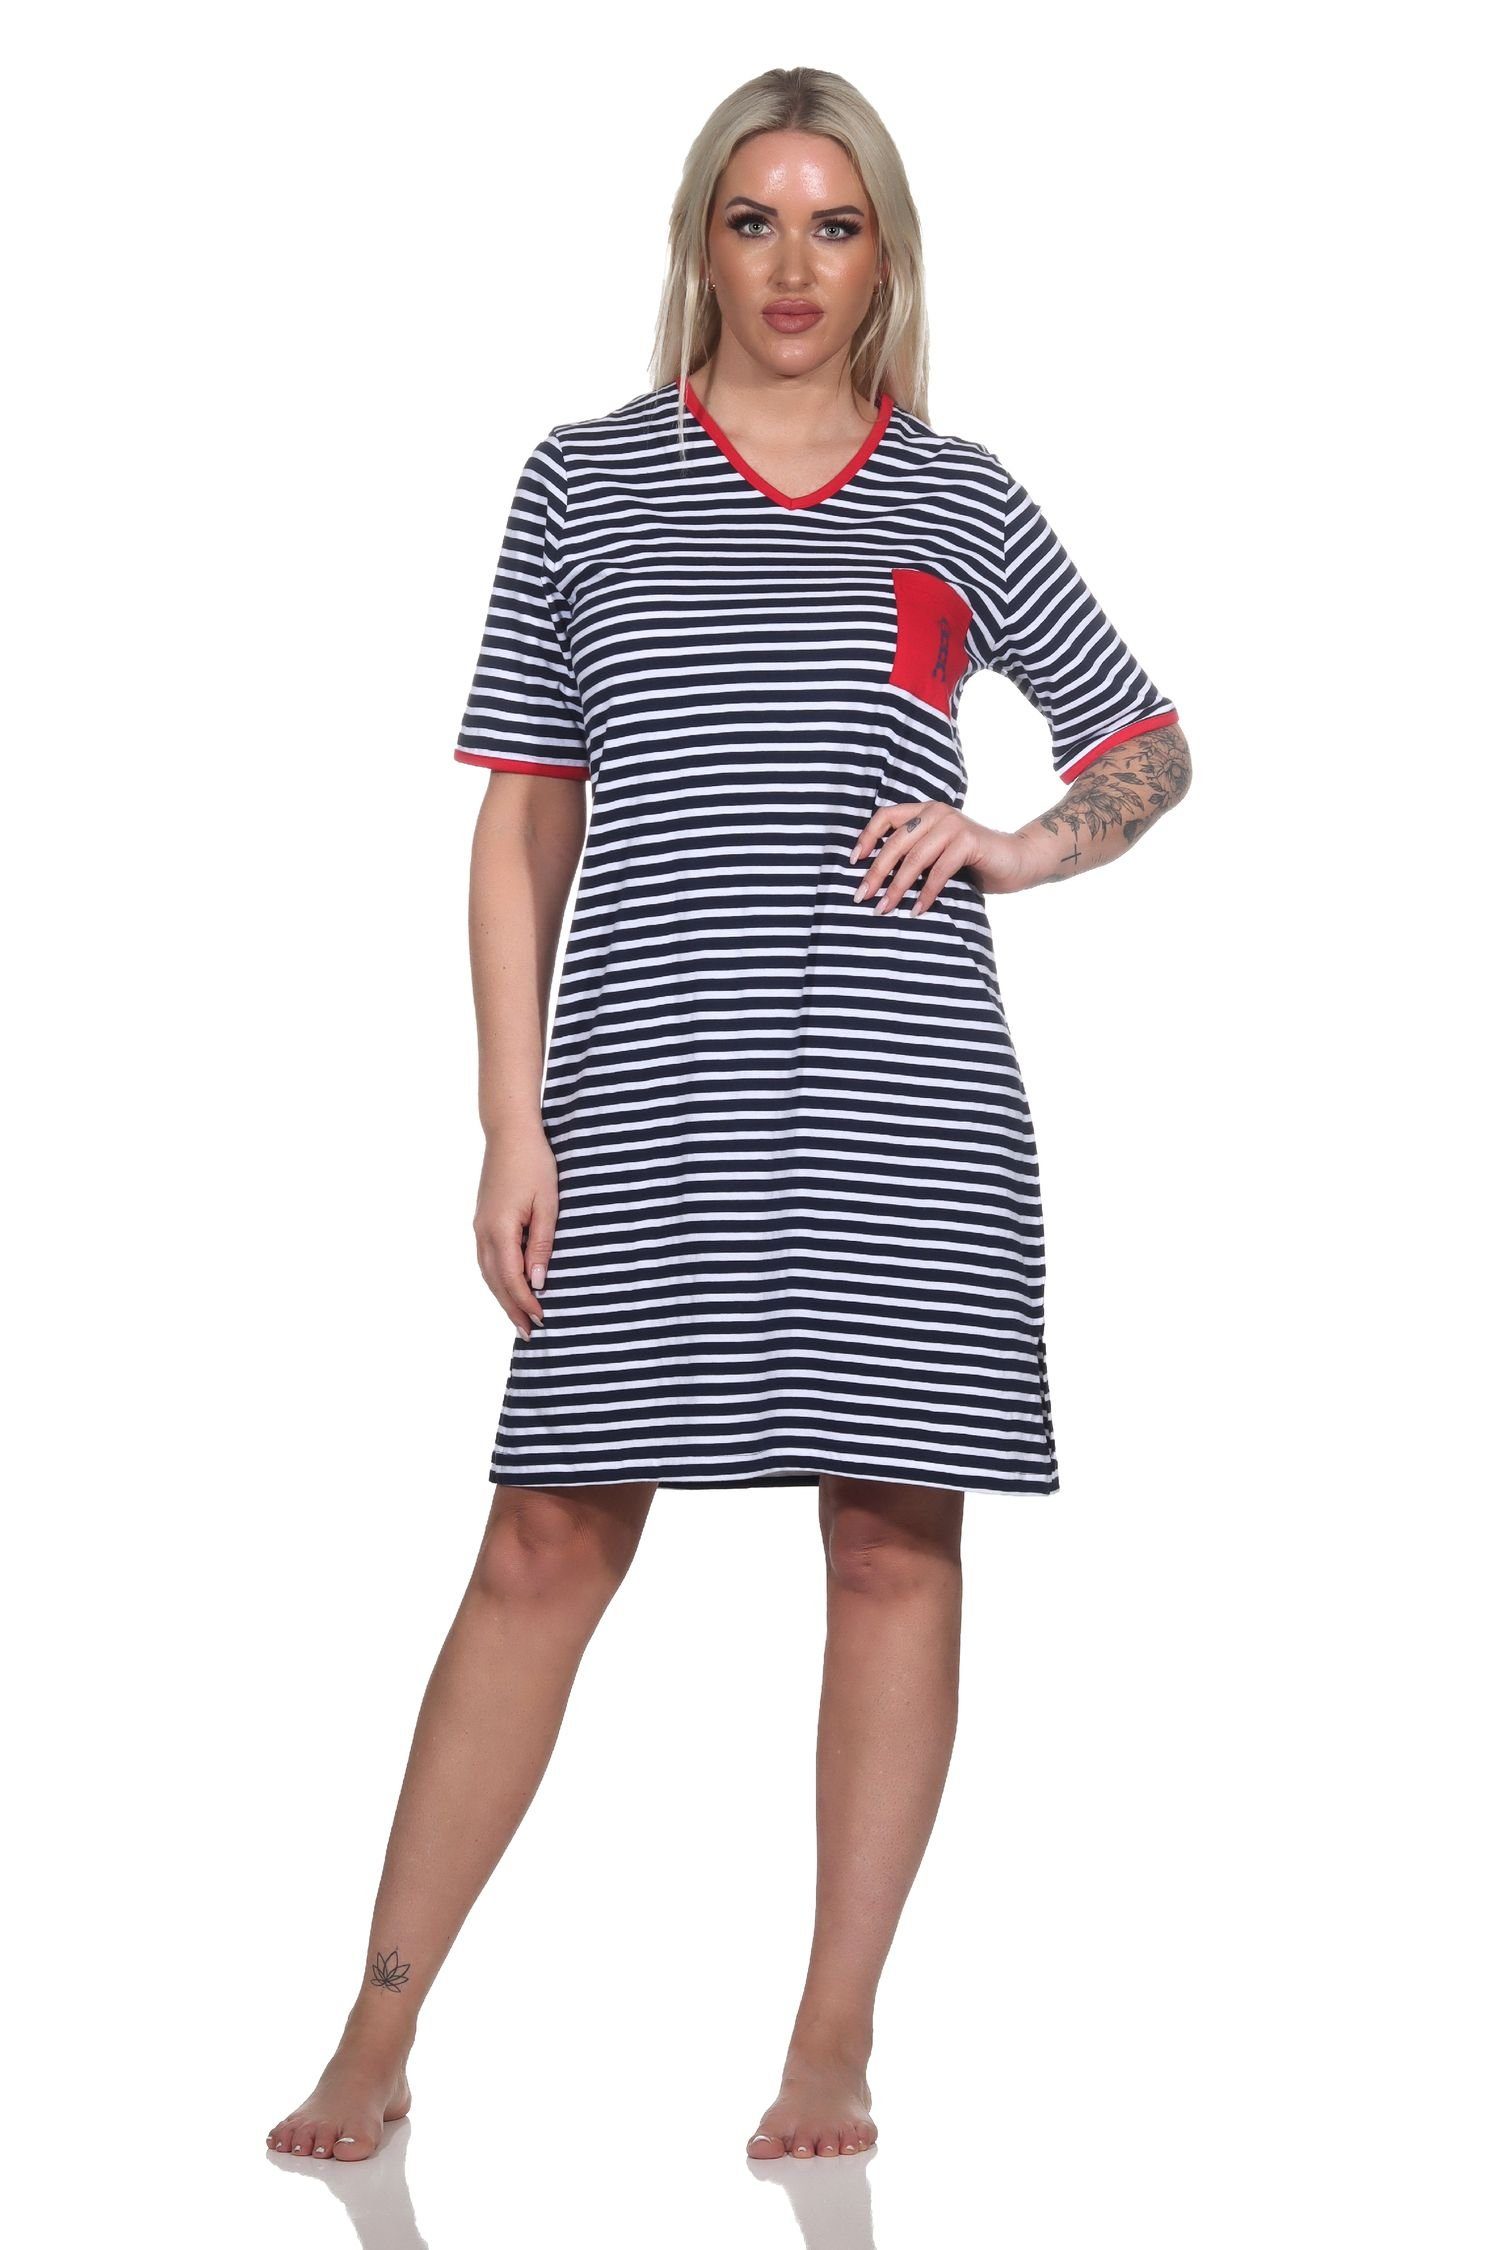 Normann Nachthemd Damen Kurzarm Nachthemd in maritimer Optik und mit Leuchtturm Motiv marine | Nachthemden